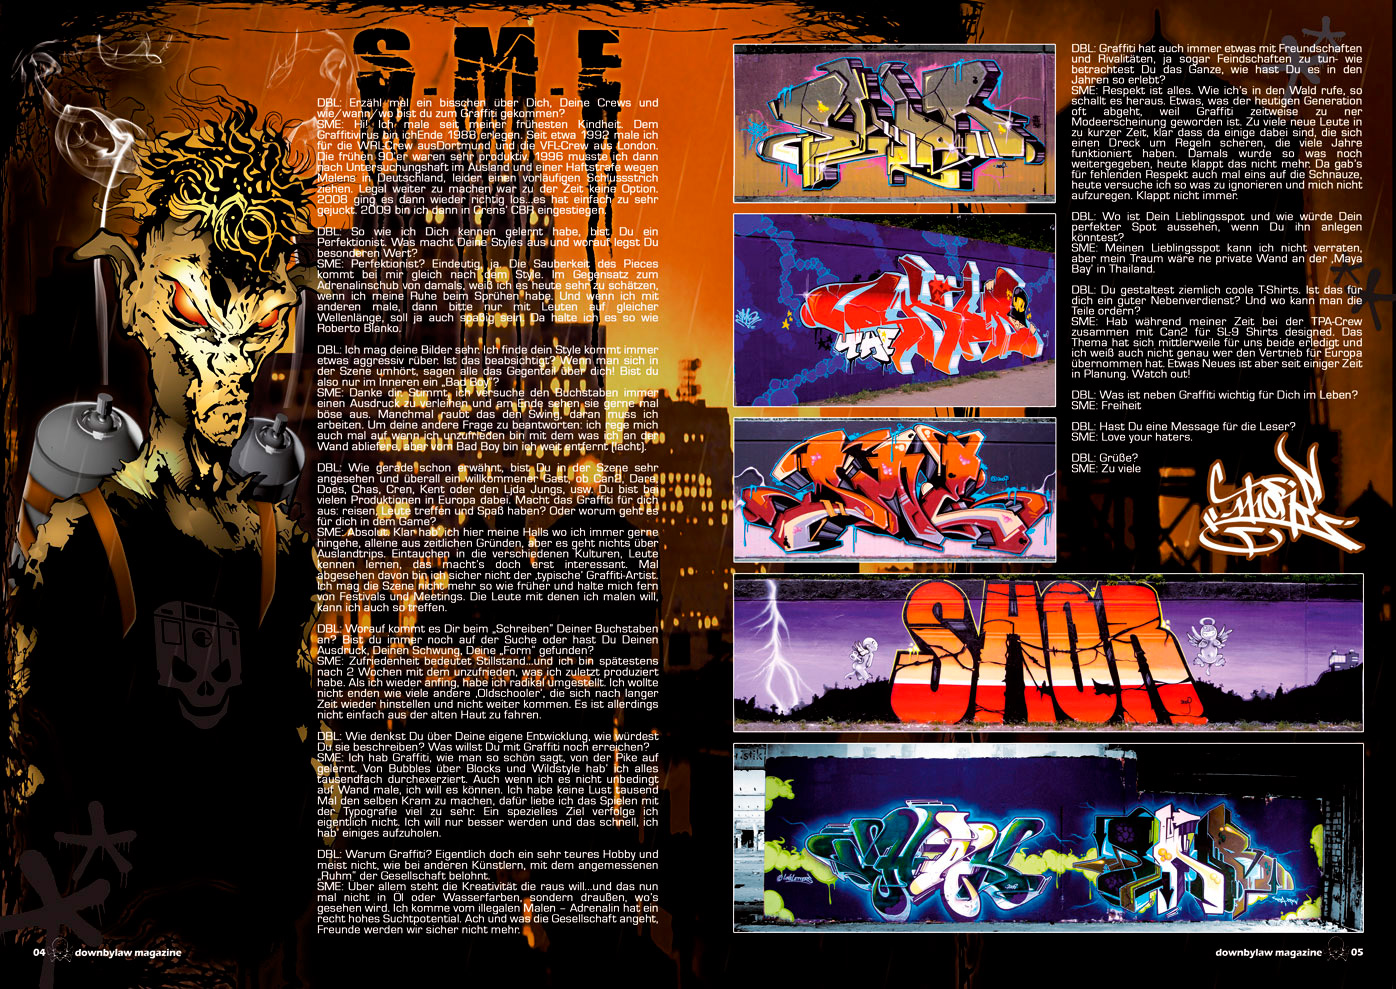 downbylaw_magazine_6_shor_sme_graffiti